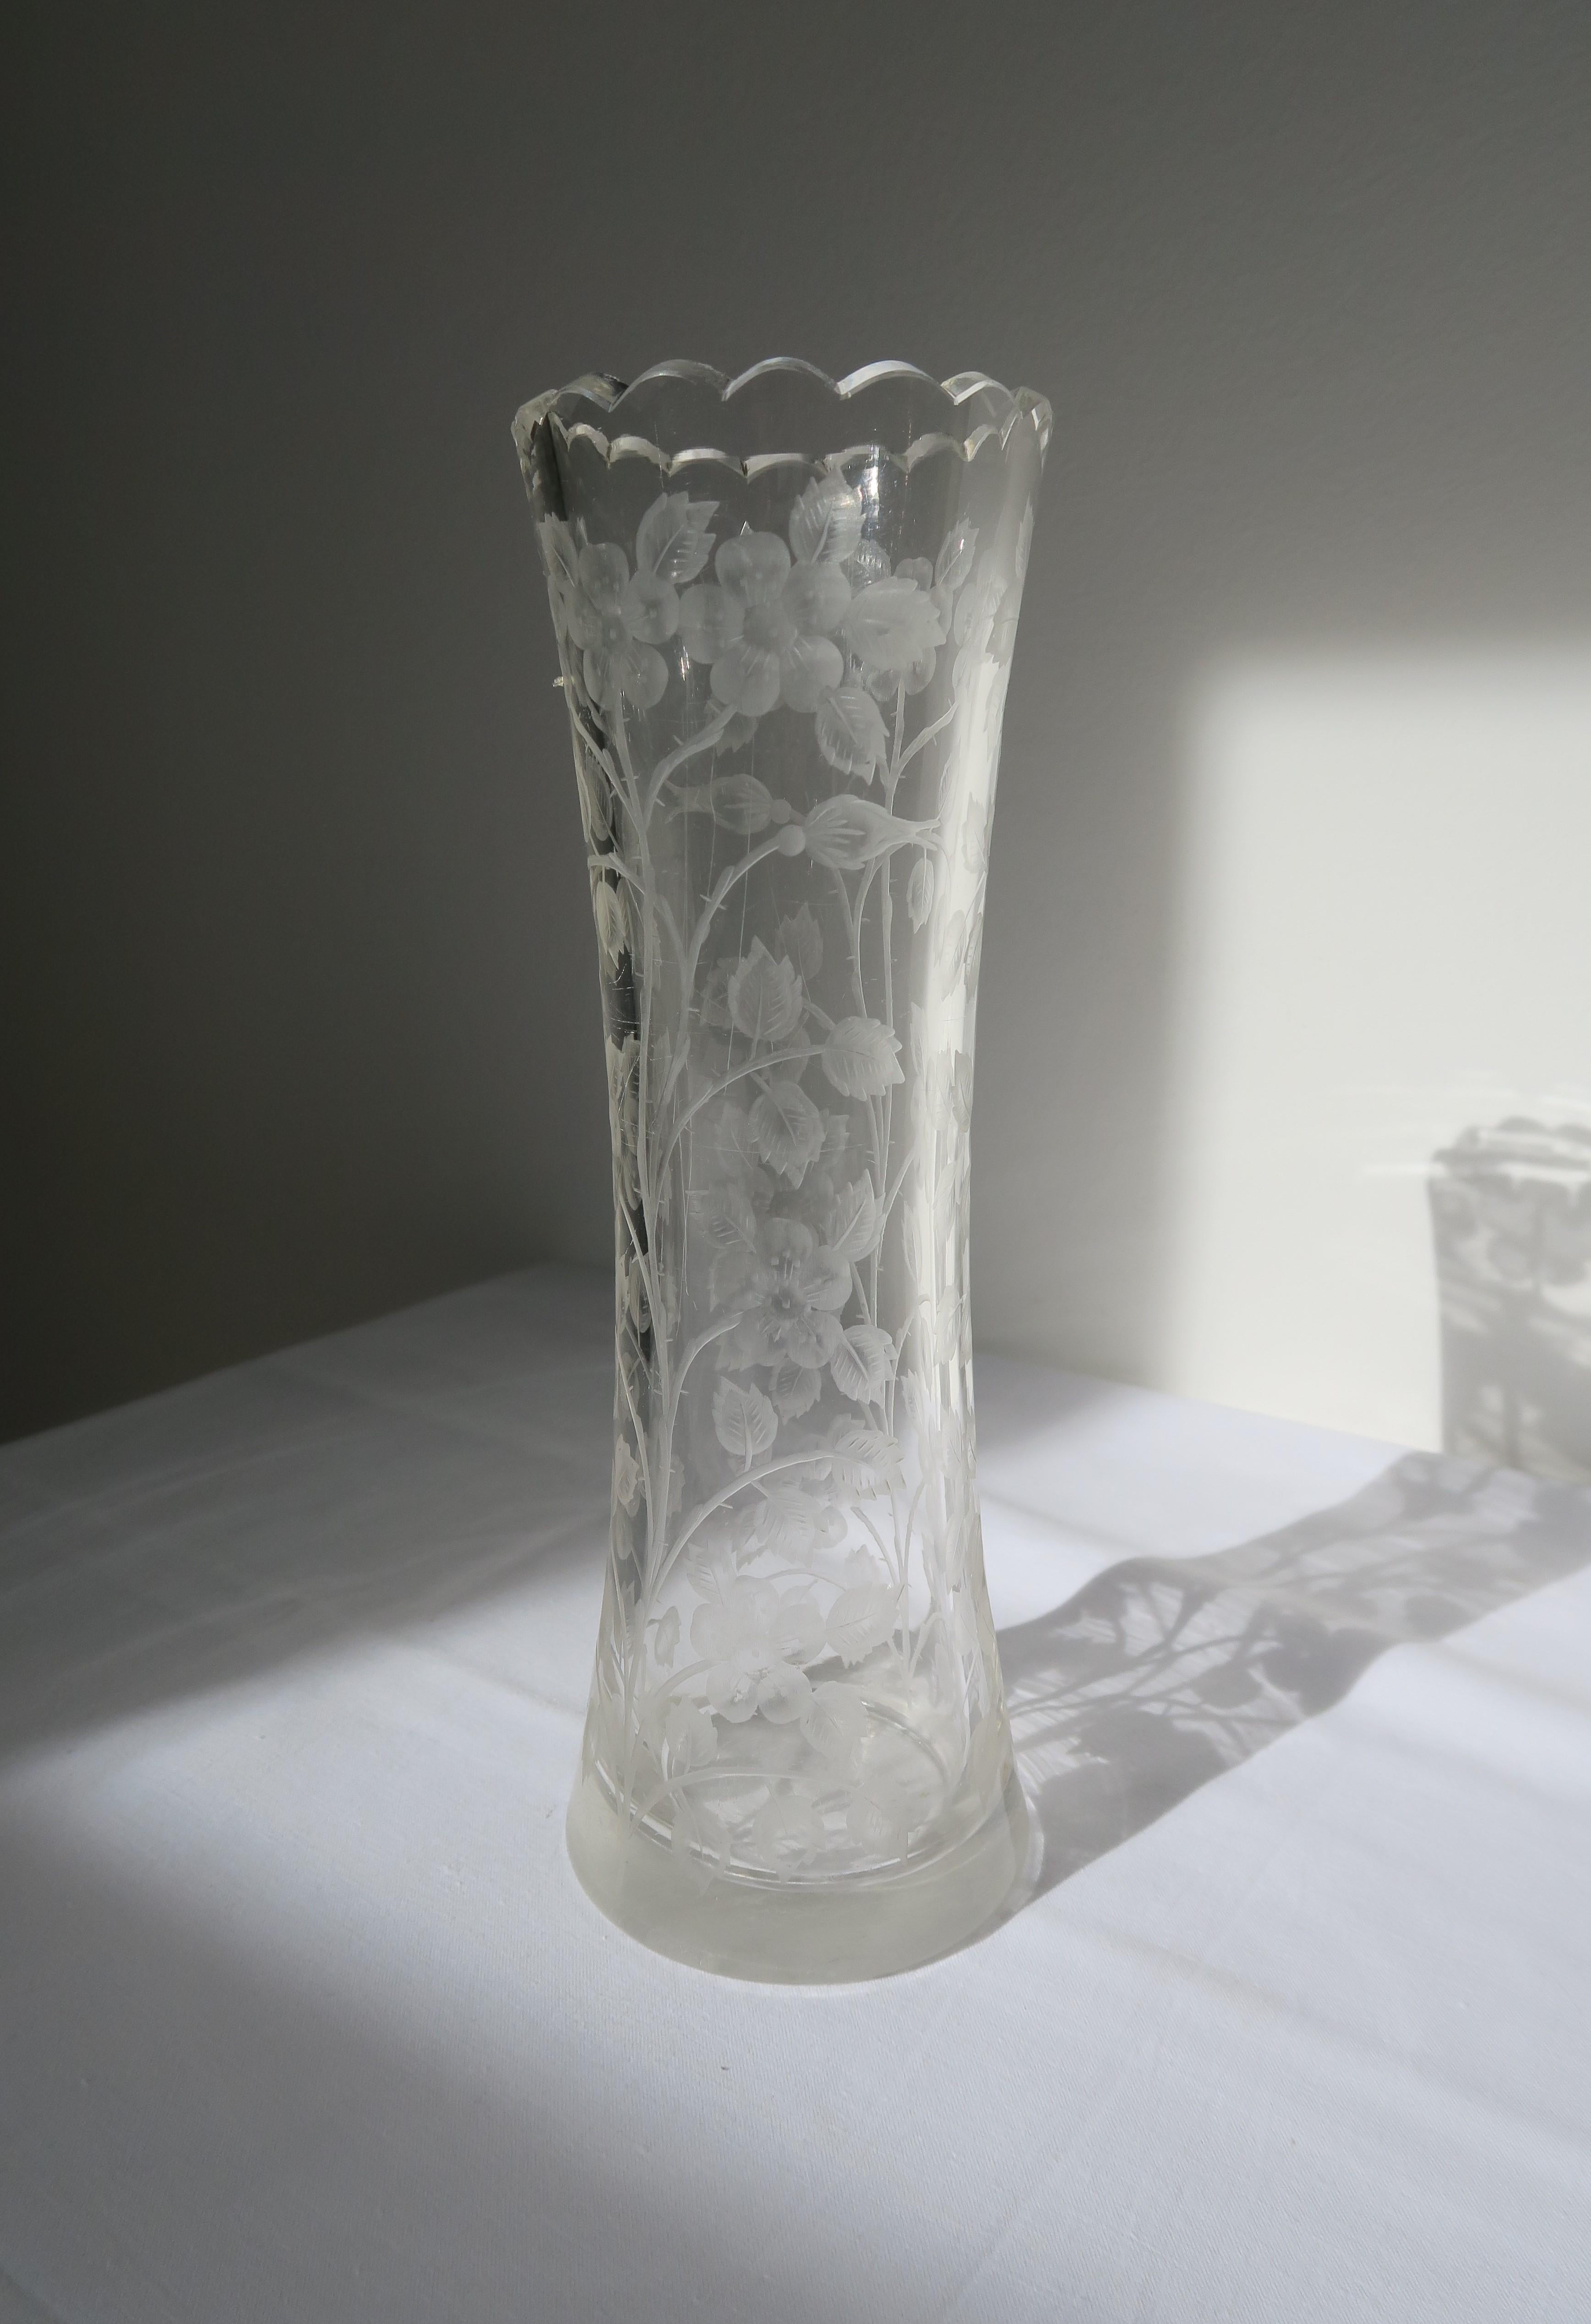 Vase original en verre taillé par Moser Glassworks vers 1910-1920. Conçu par le célèbre designer Ludwig Moser, basé à Karlovy Vary, il présente un bord festonné et un magnifique motif de rose taillé dans le verre, qui capte la lumière de manière